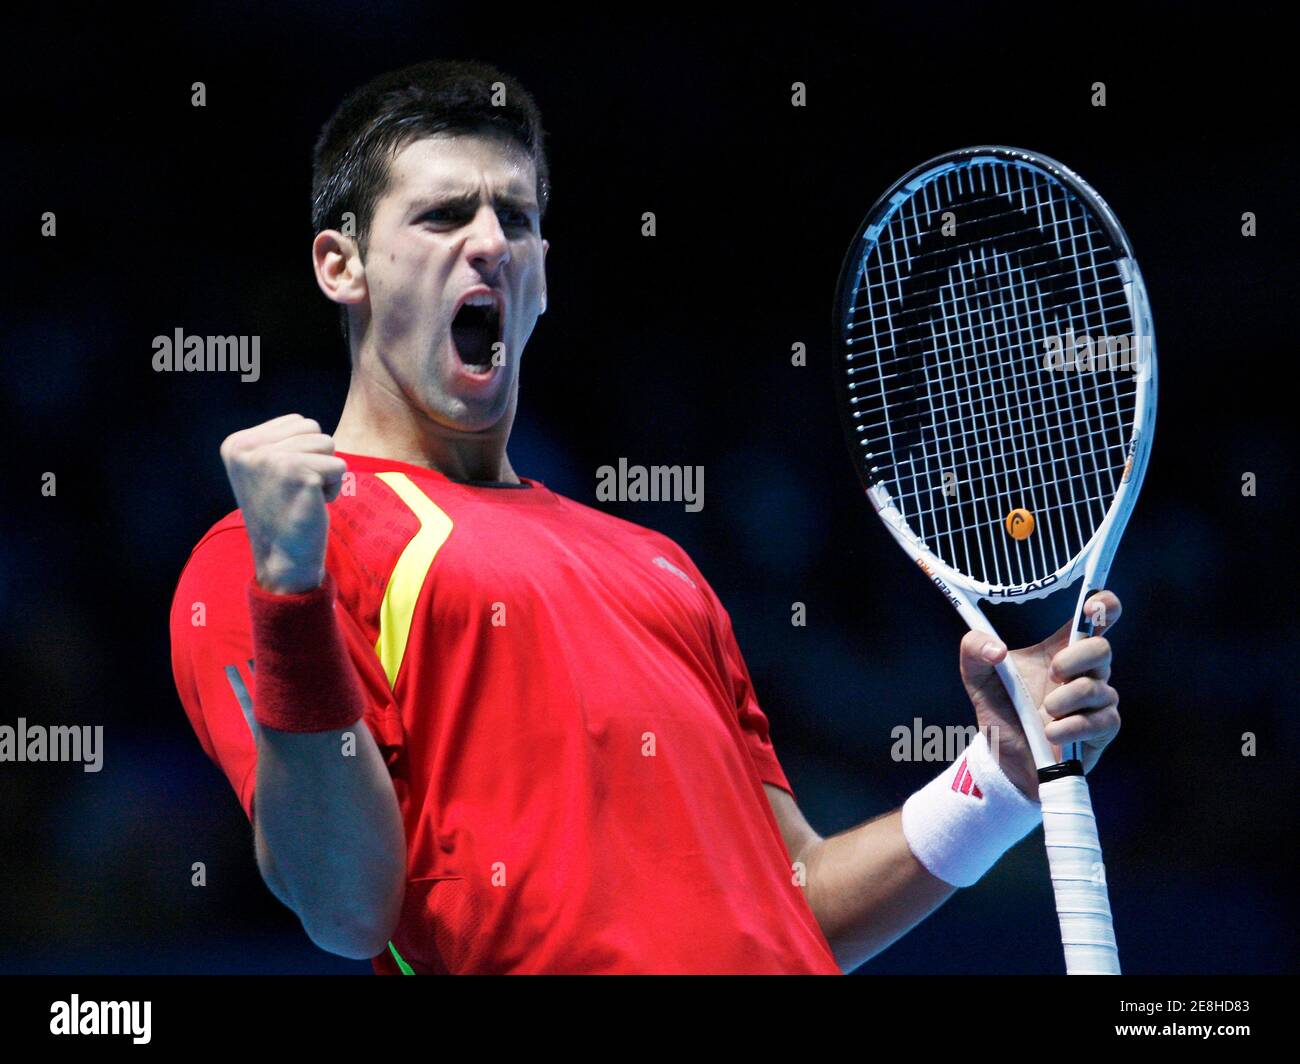 Novak Djokovic della Serbia reagisce durante la sua partita di tennis ATP World Tour contro Robin Soderling della Svezia a Londra, 25 novembre 2009. REUTERS/Suzanne Plunkett (GRAN BRETAGNA TENNIS SPORT) Foto Stock